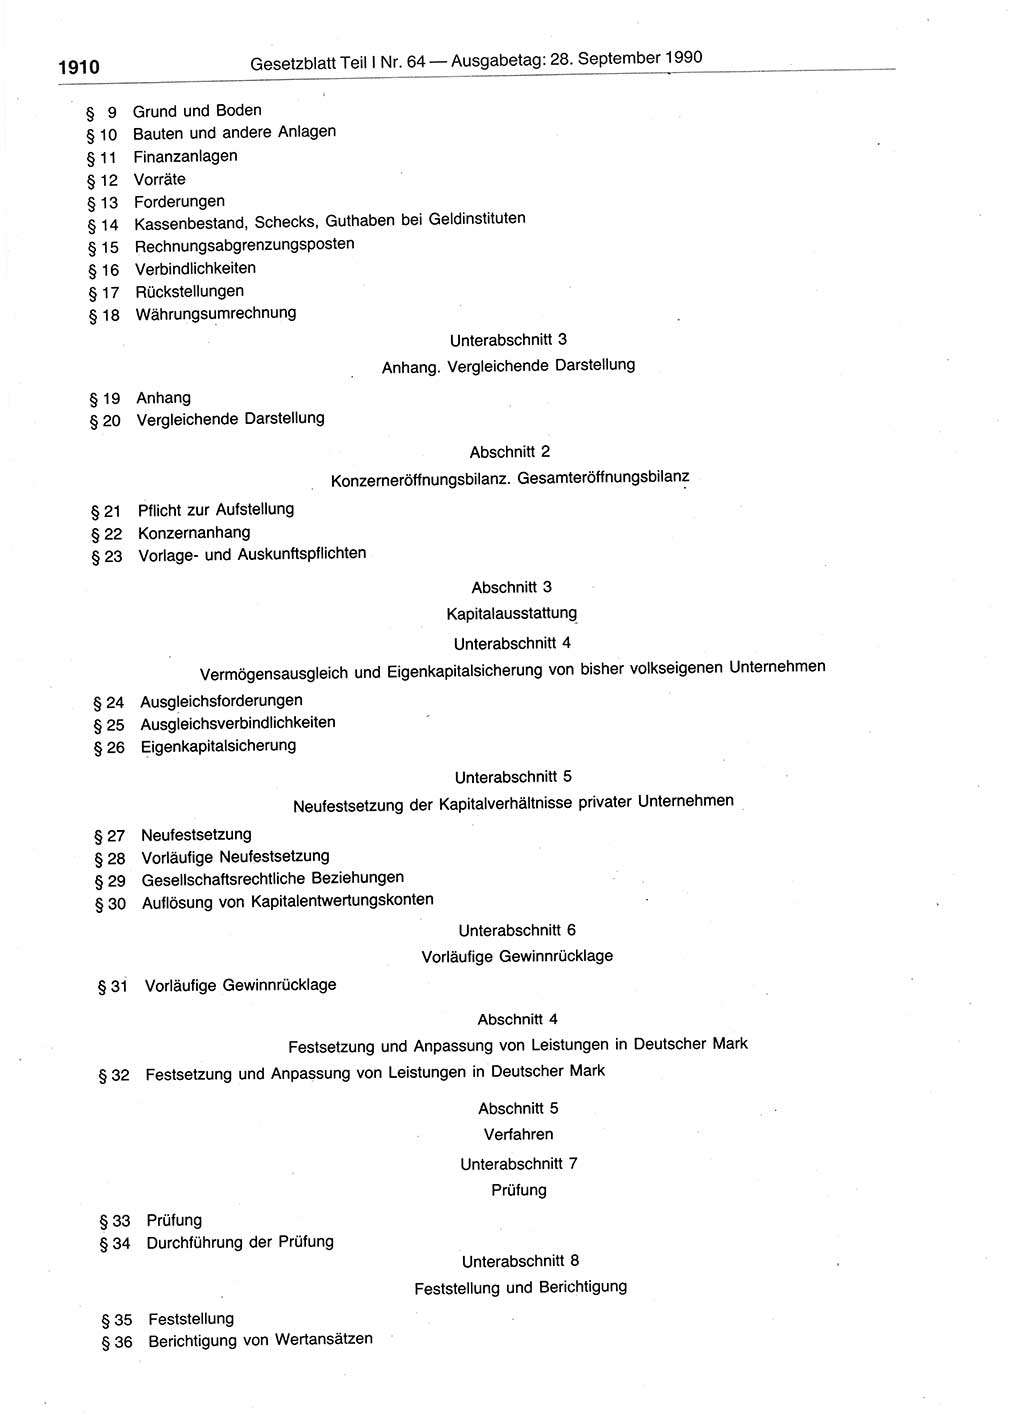 Gesetzblatt (GBl.) der Deutschen Demokratischen Republik (DDR) Teil Ⅰ 1990, Seite 1910 (GBl. DDR Ⅰ 1990, S. 1910)